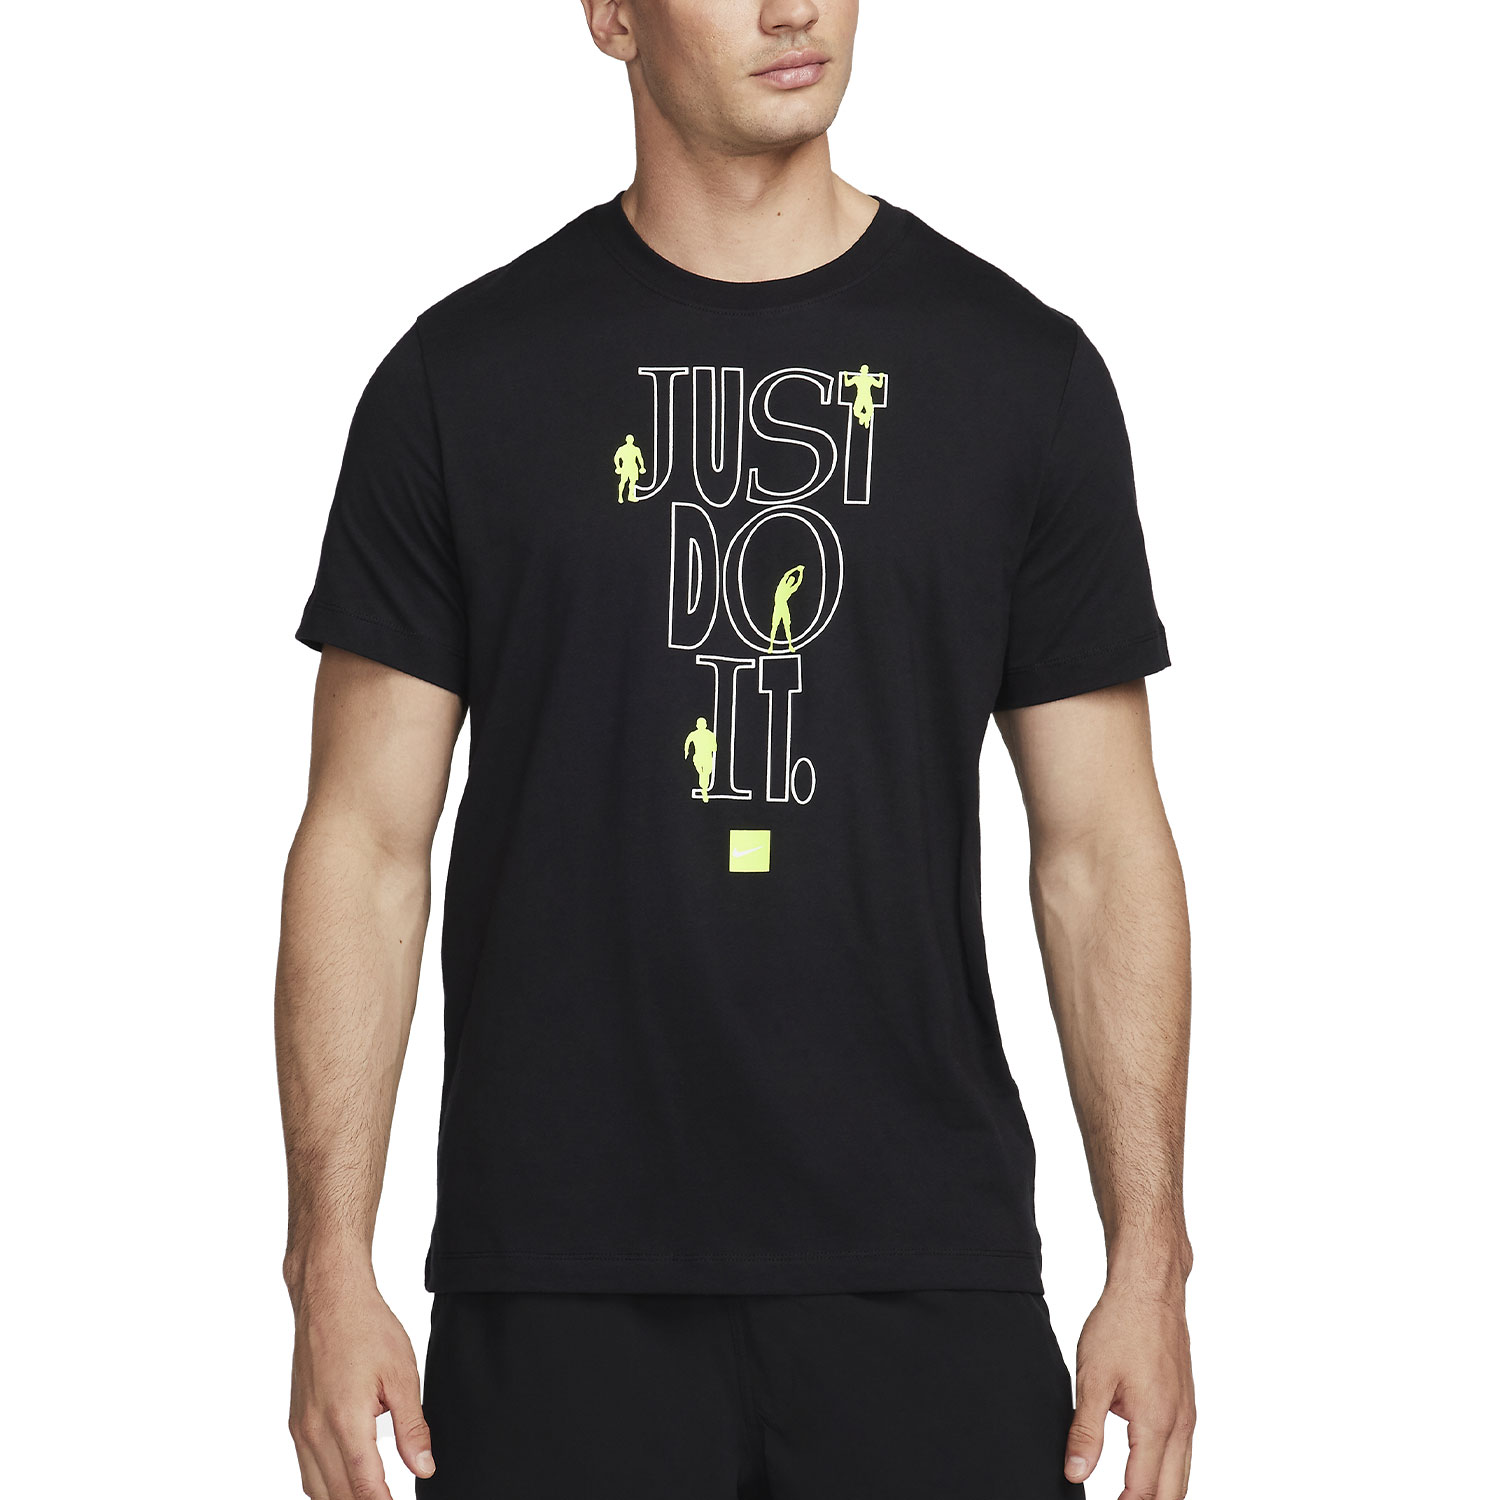 Nike Vintage Camiseta - Black